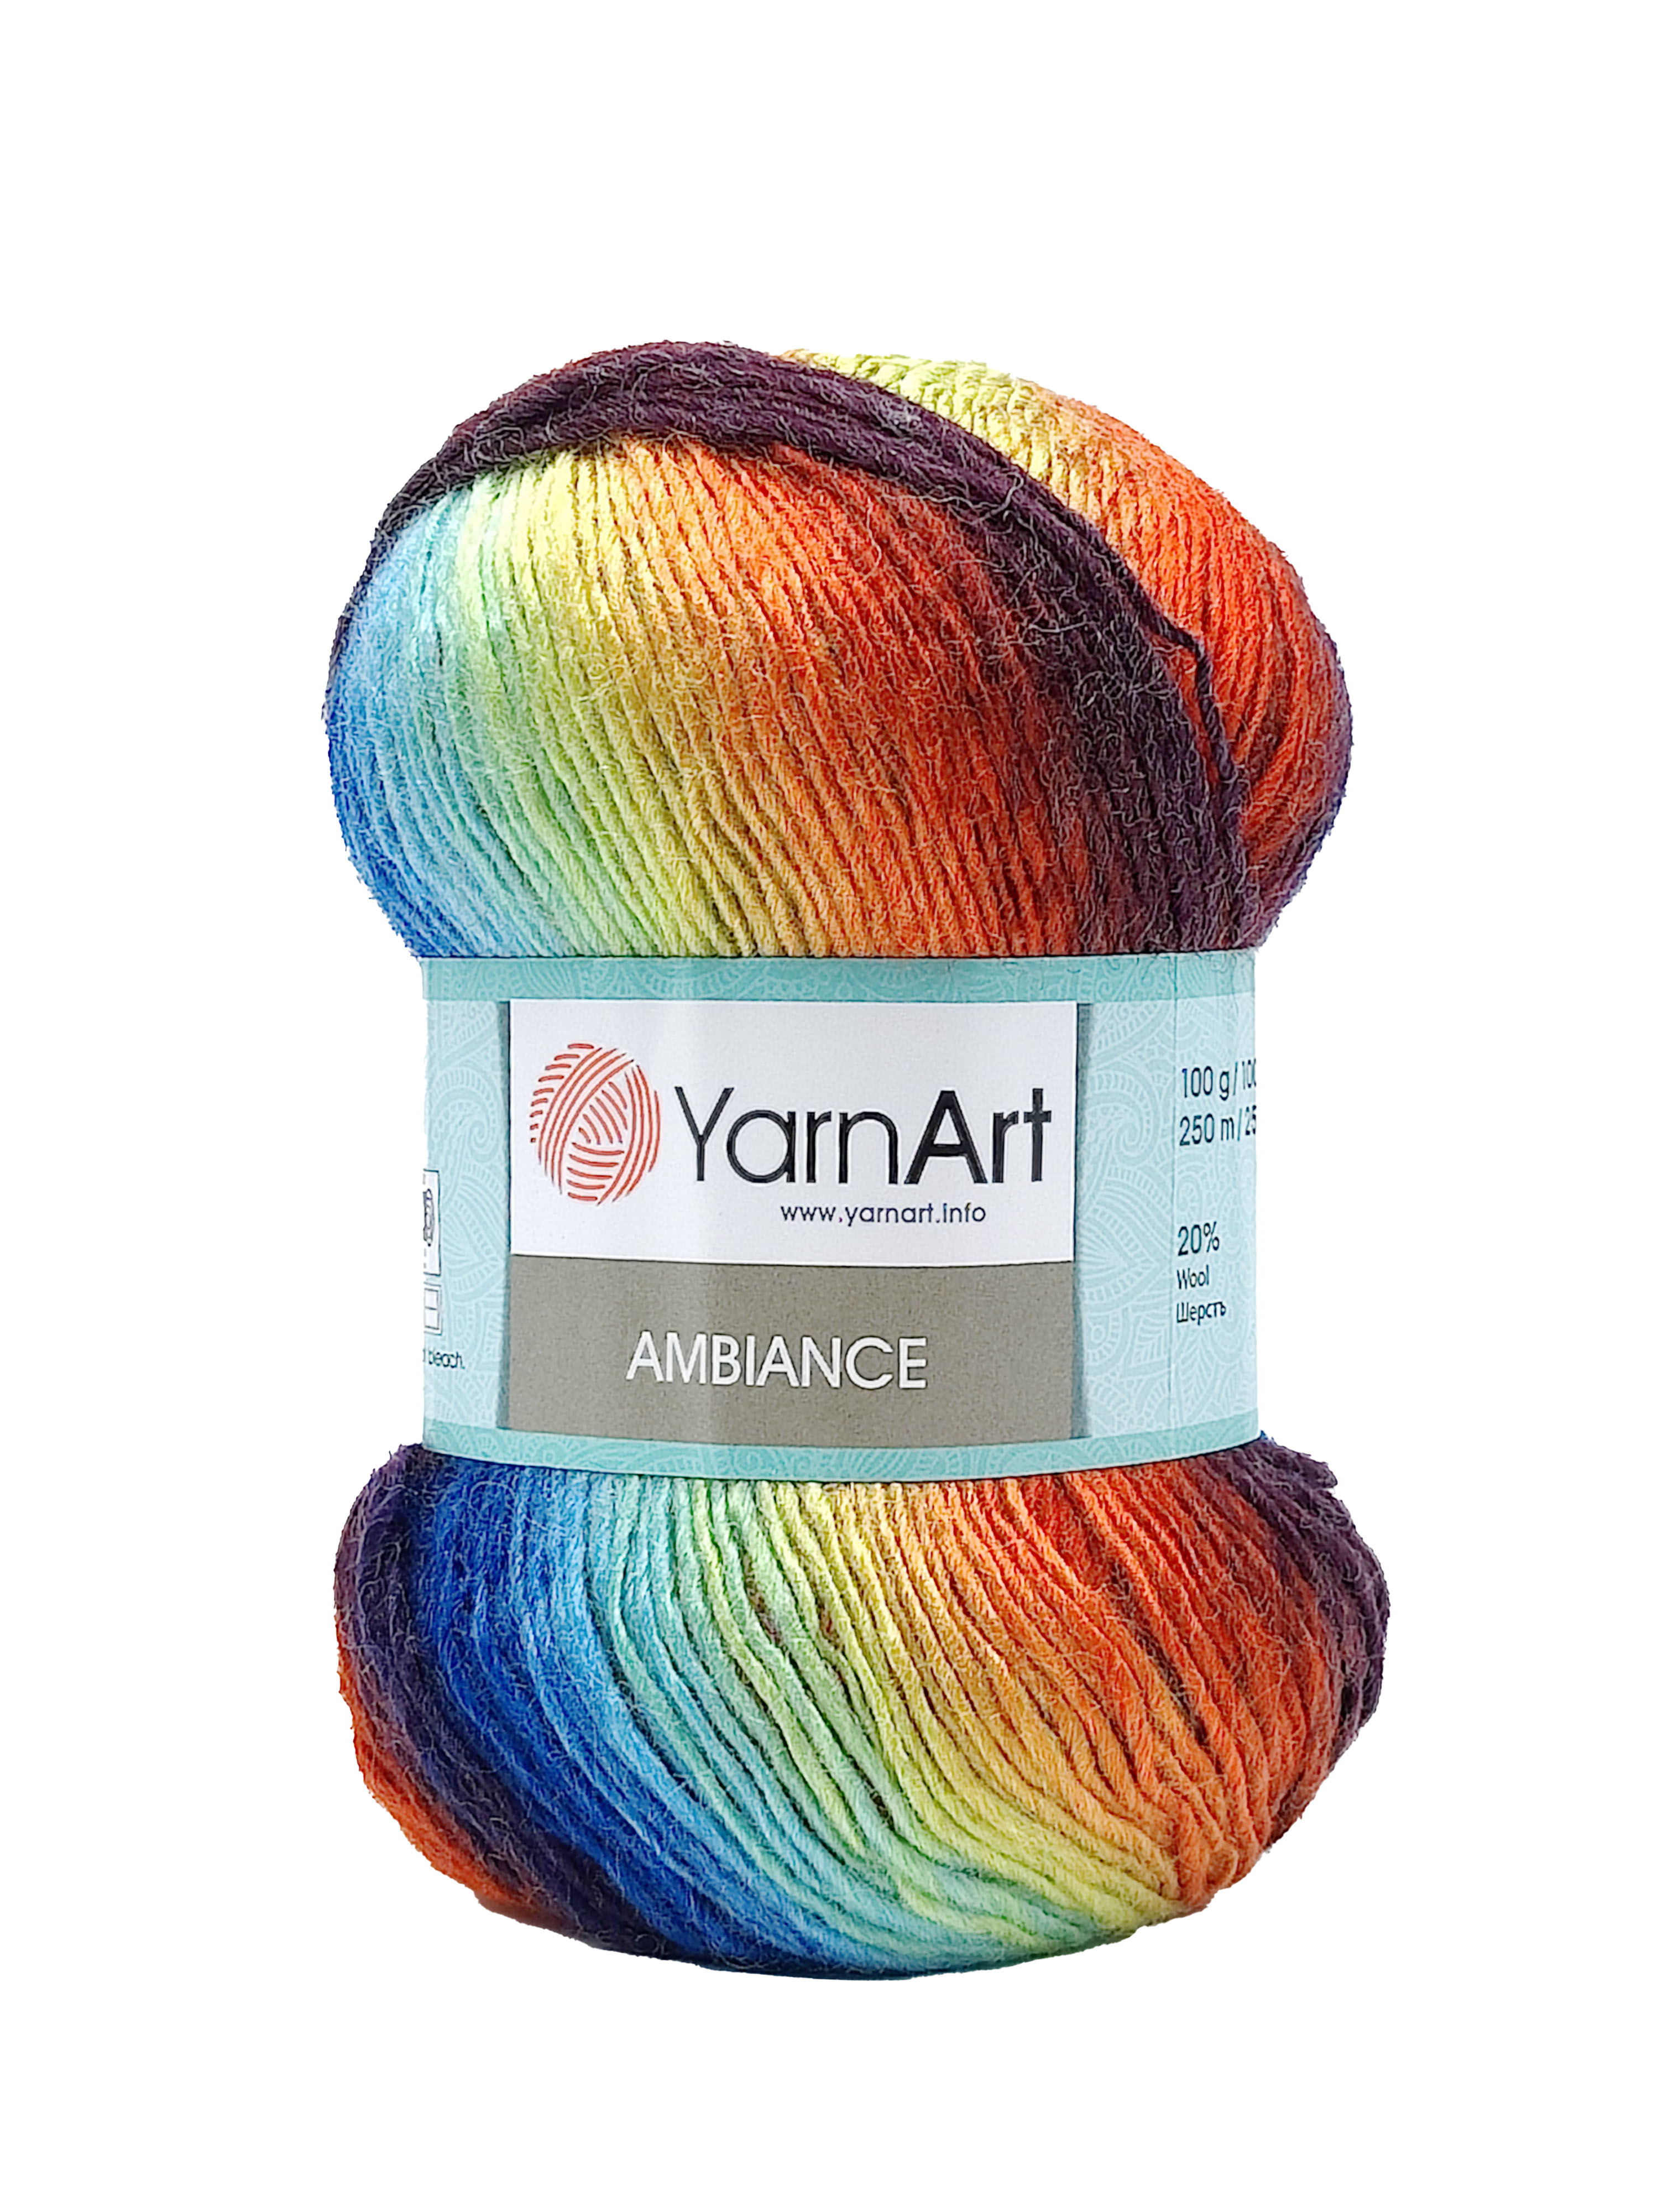 YarnArt Ambiance